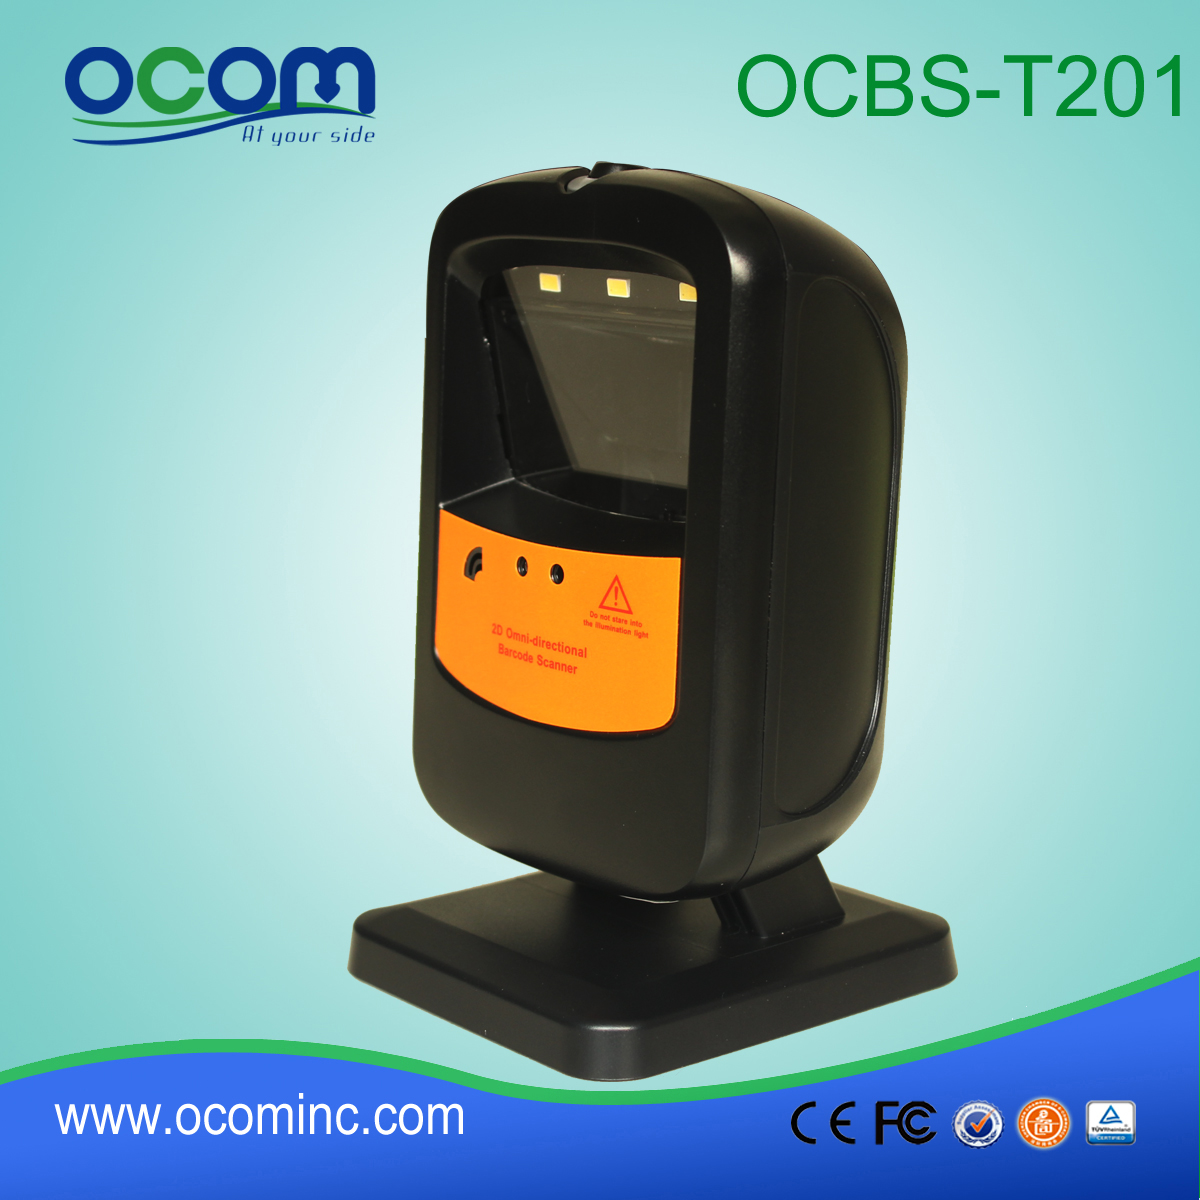 超市全方位激光条码扫描器厂商 (OCBS-T201)